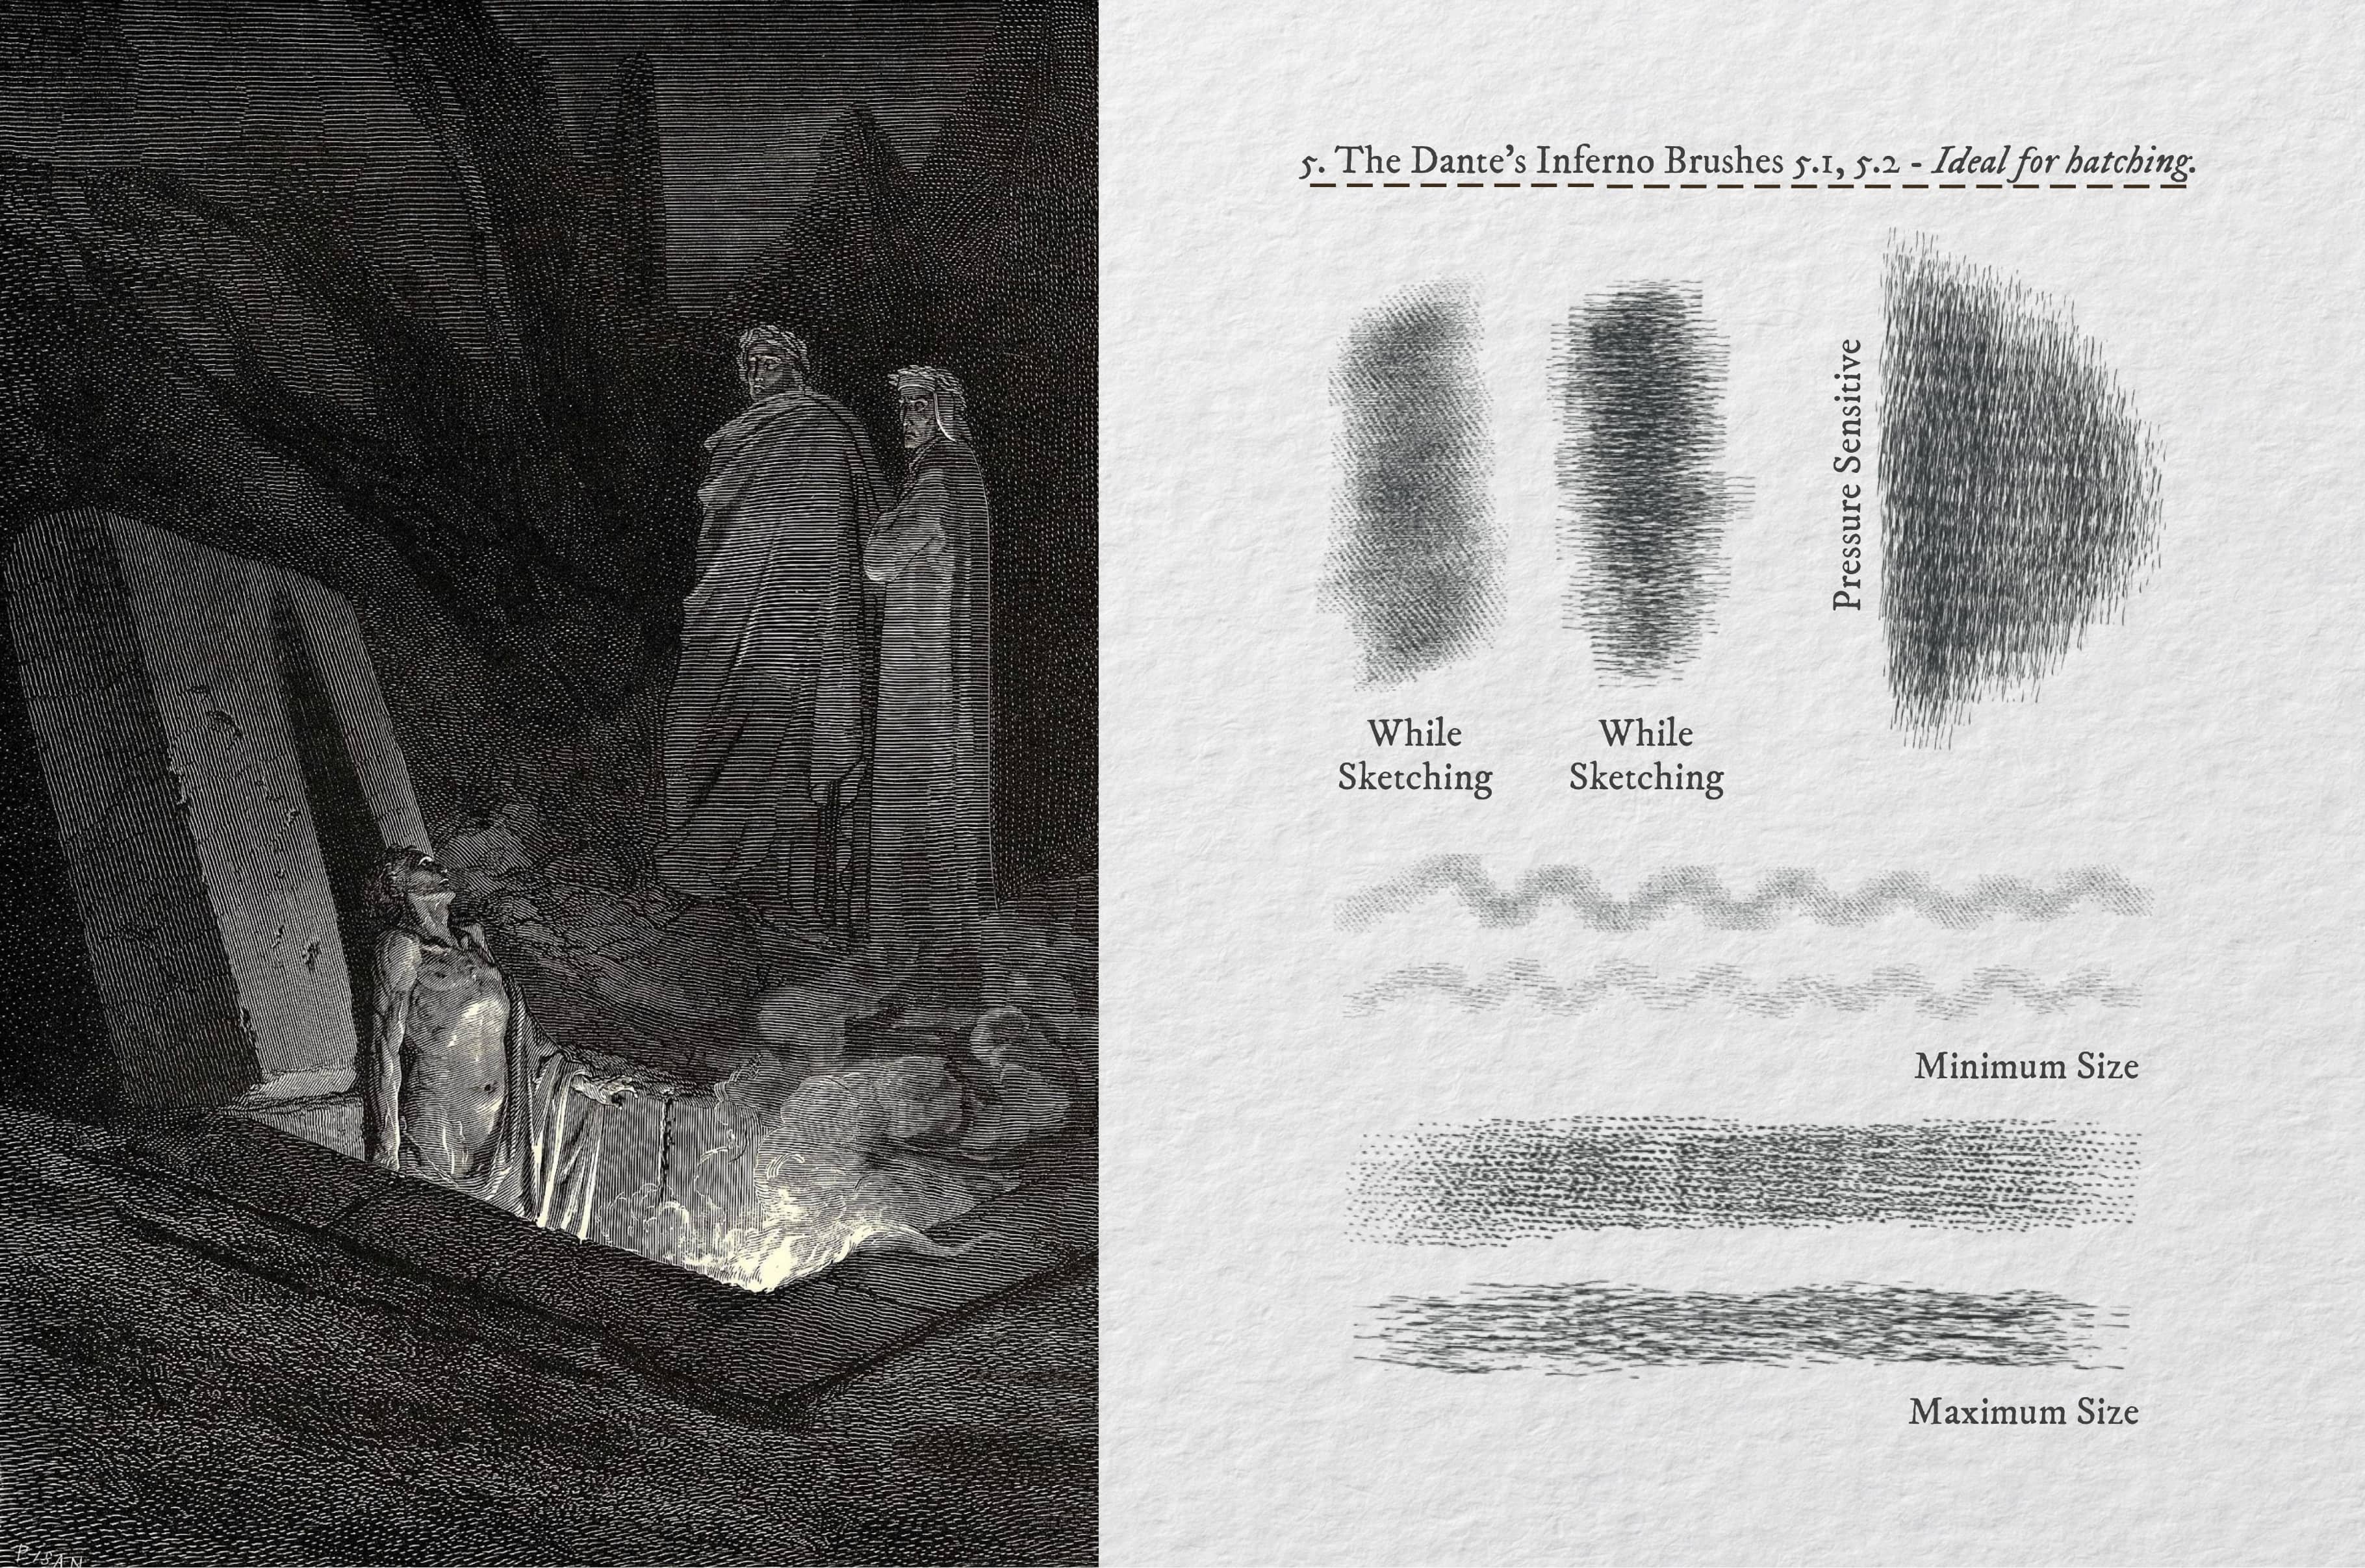 The Dante's Inferno Procreate Kit - Design Cuts